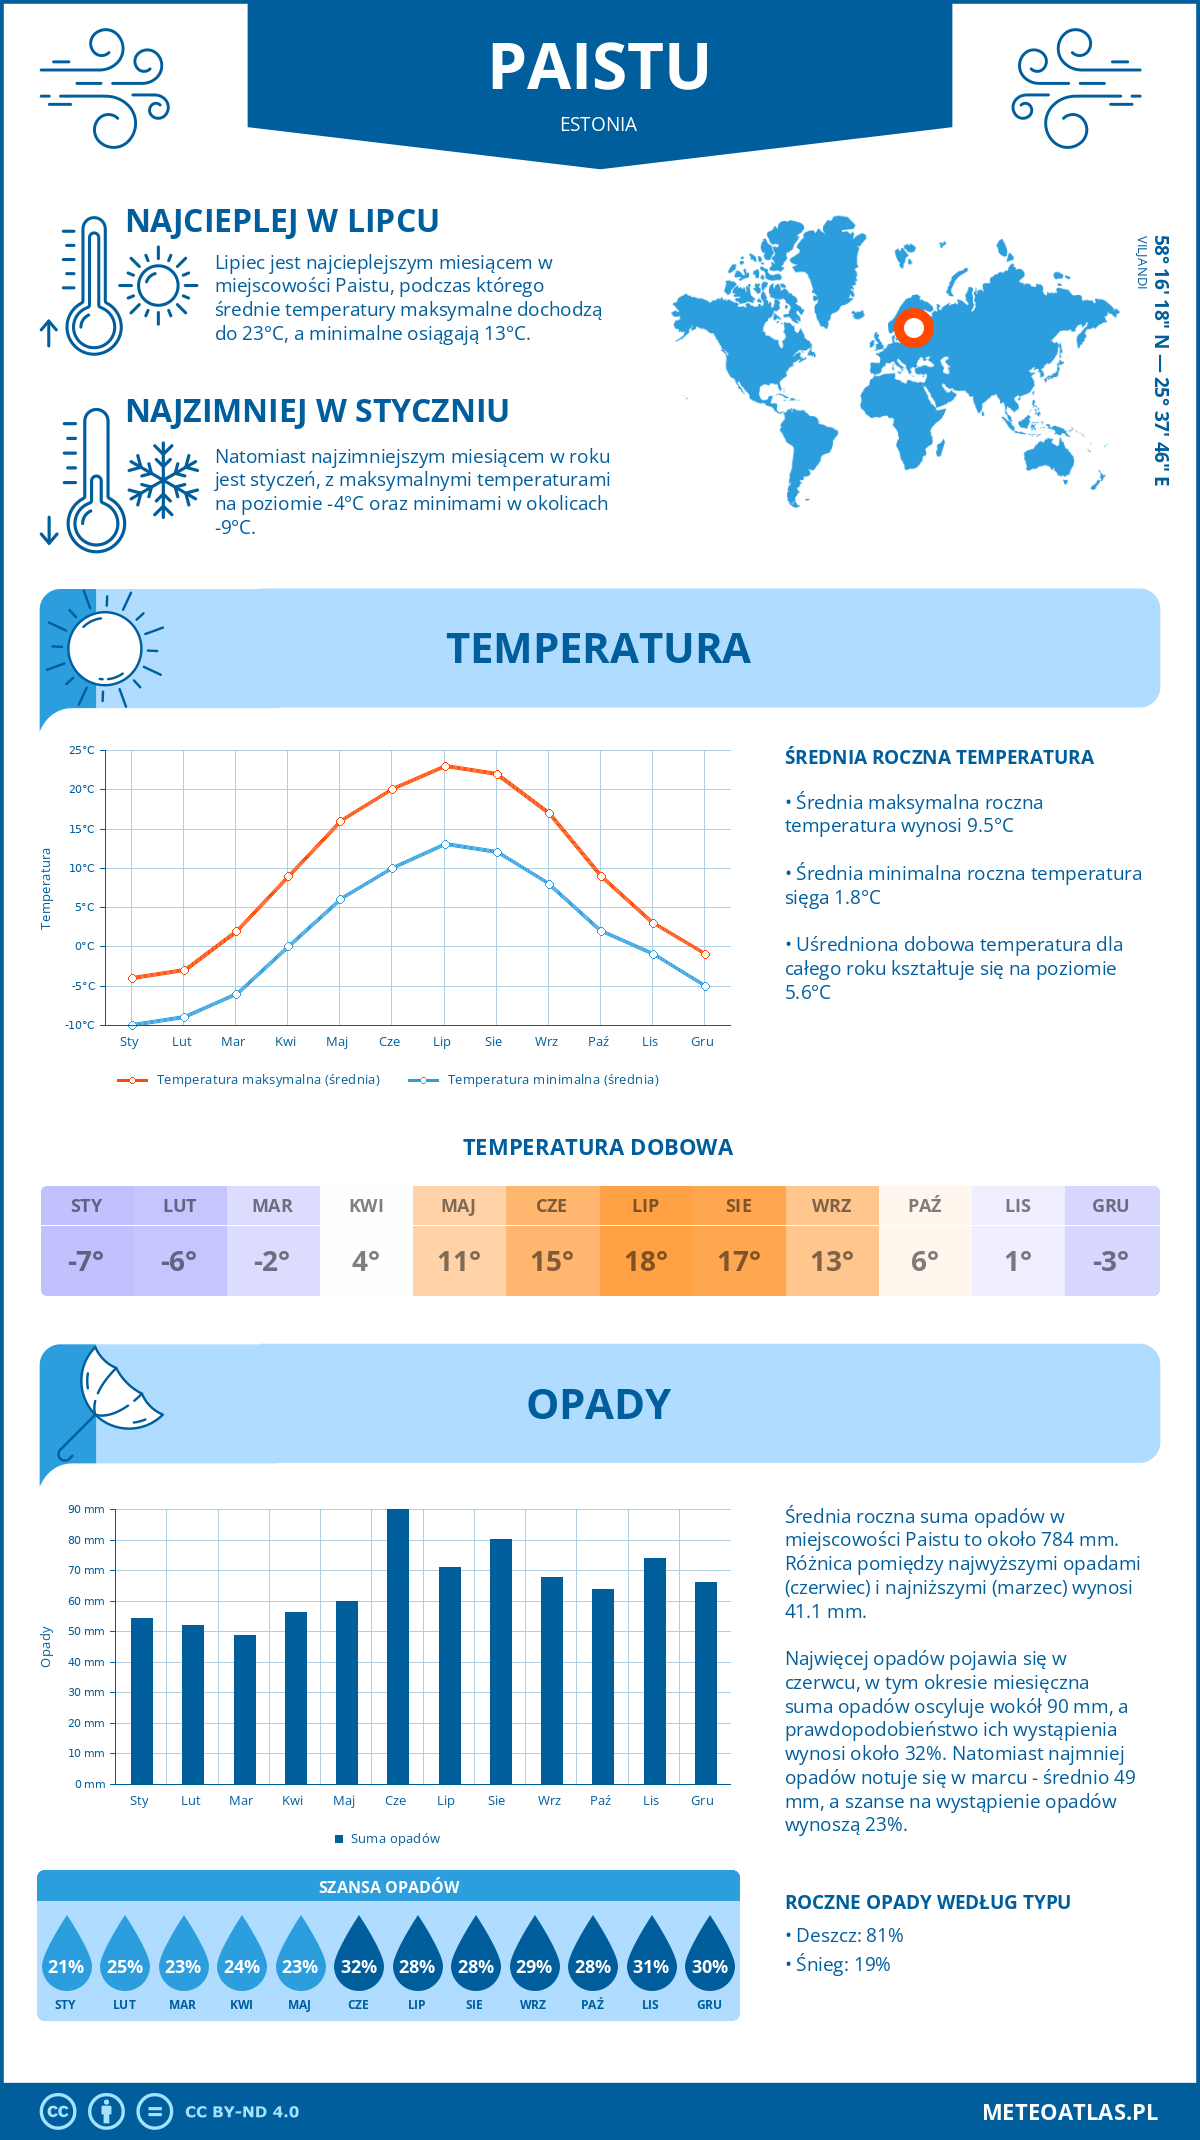 Pogoda Paistu (Estonia). Temperatura oraz opady.